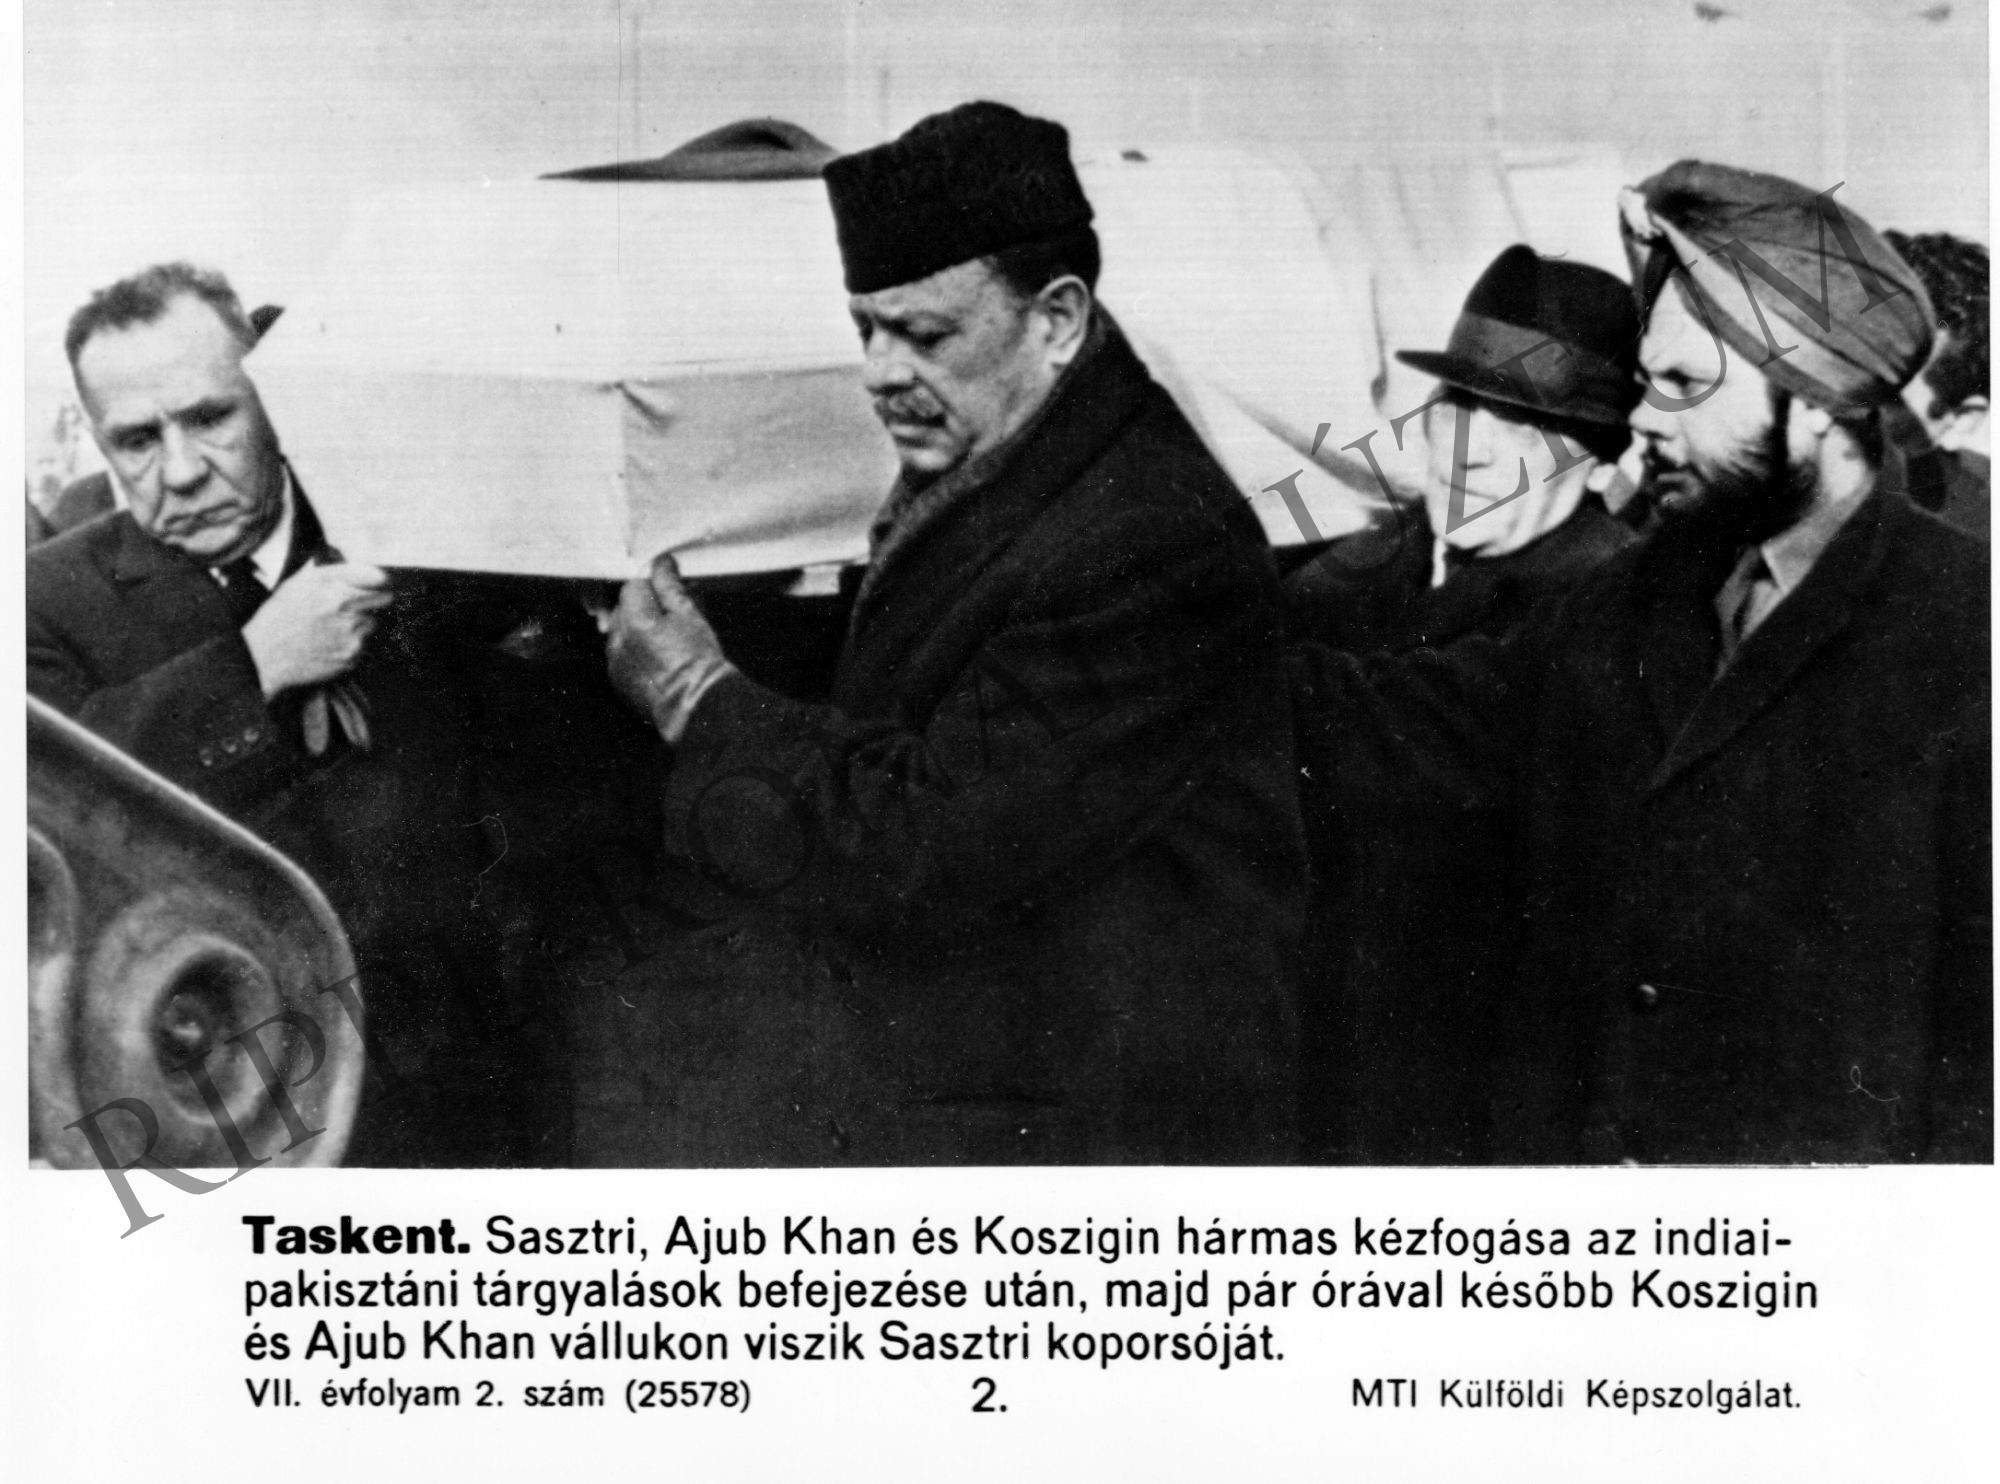 Az indiai-pakisztáni tárgyalások után pár órával Koszigin, Ajub Khan vállukon vitte Sasztrí koporsóját (Rippl-Rónai Múzeum CC BY-NC-SA)